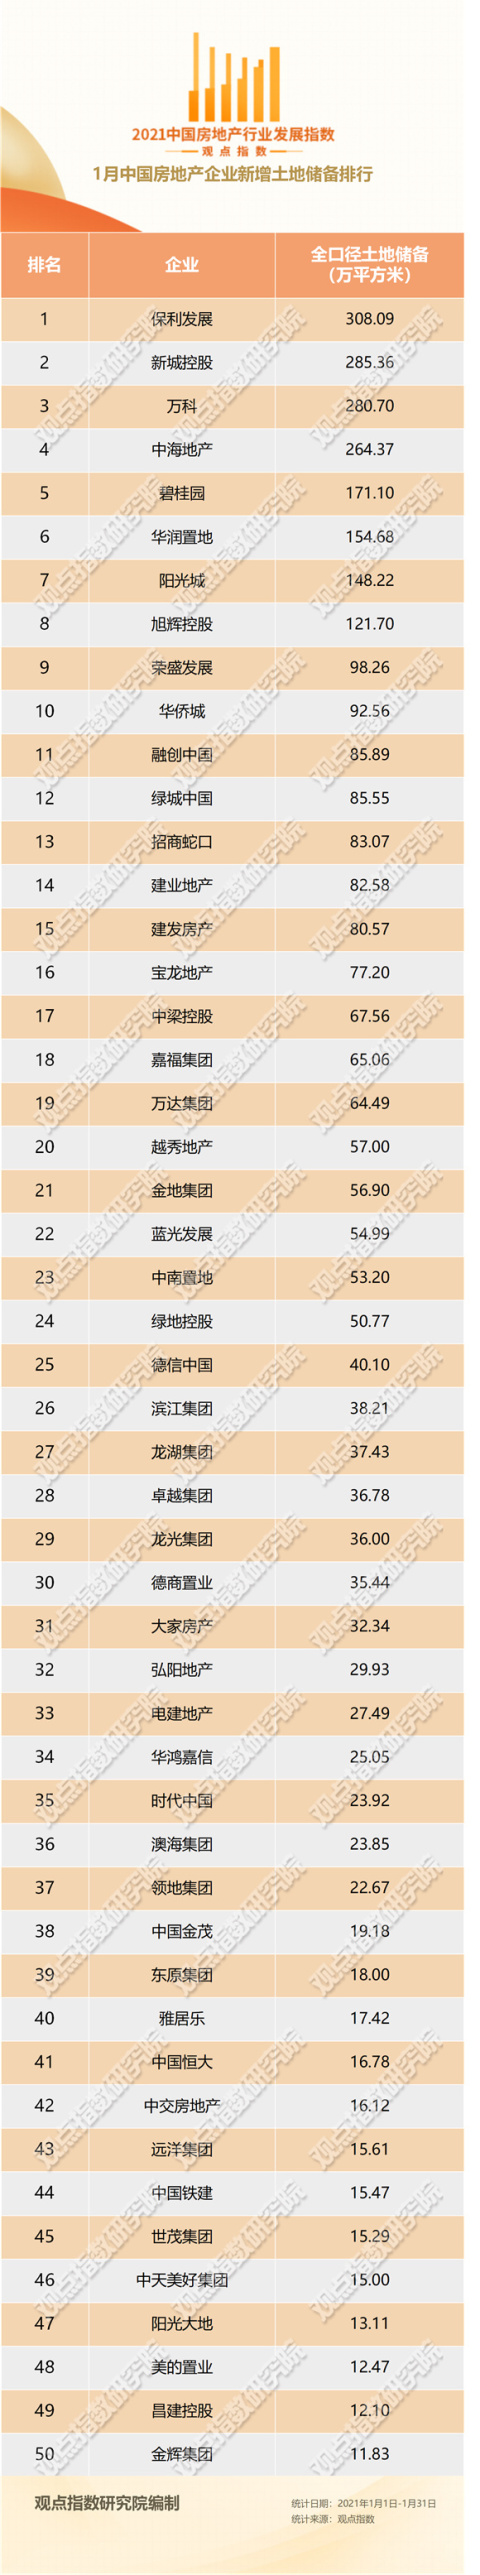 1月中国房企新增土地储备报告·观点月度指数